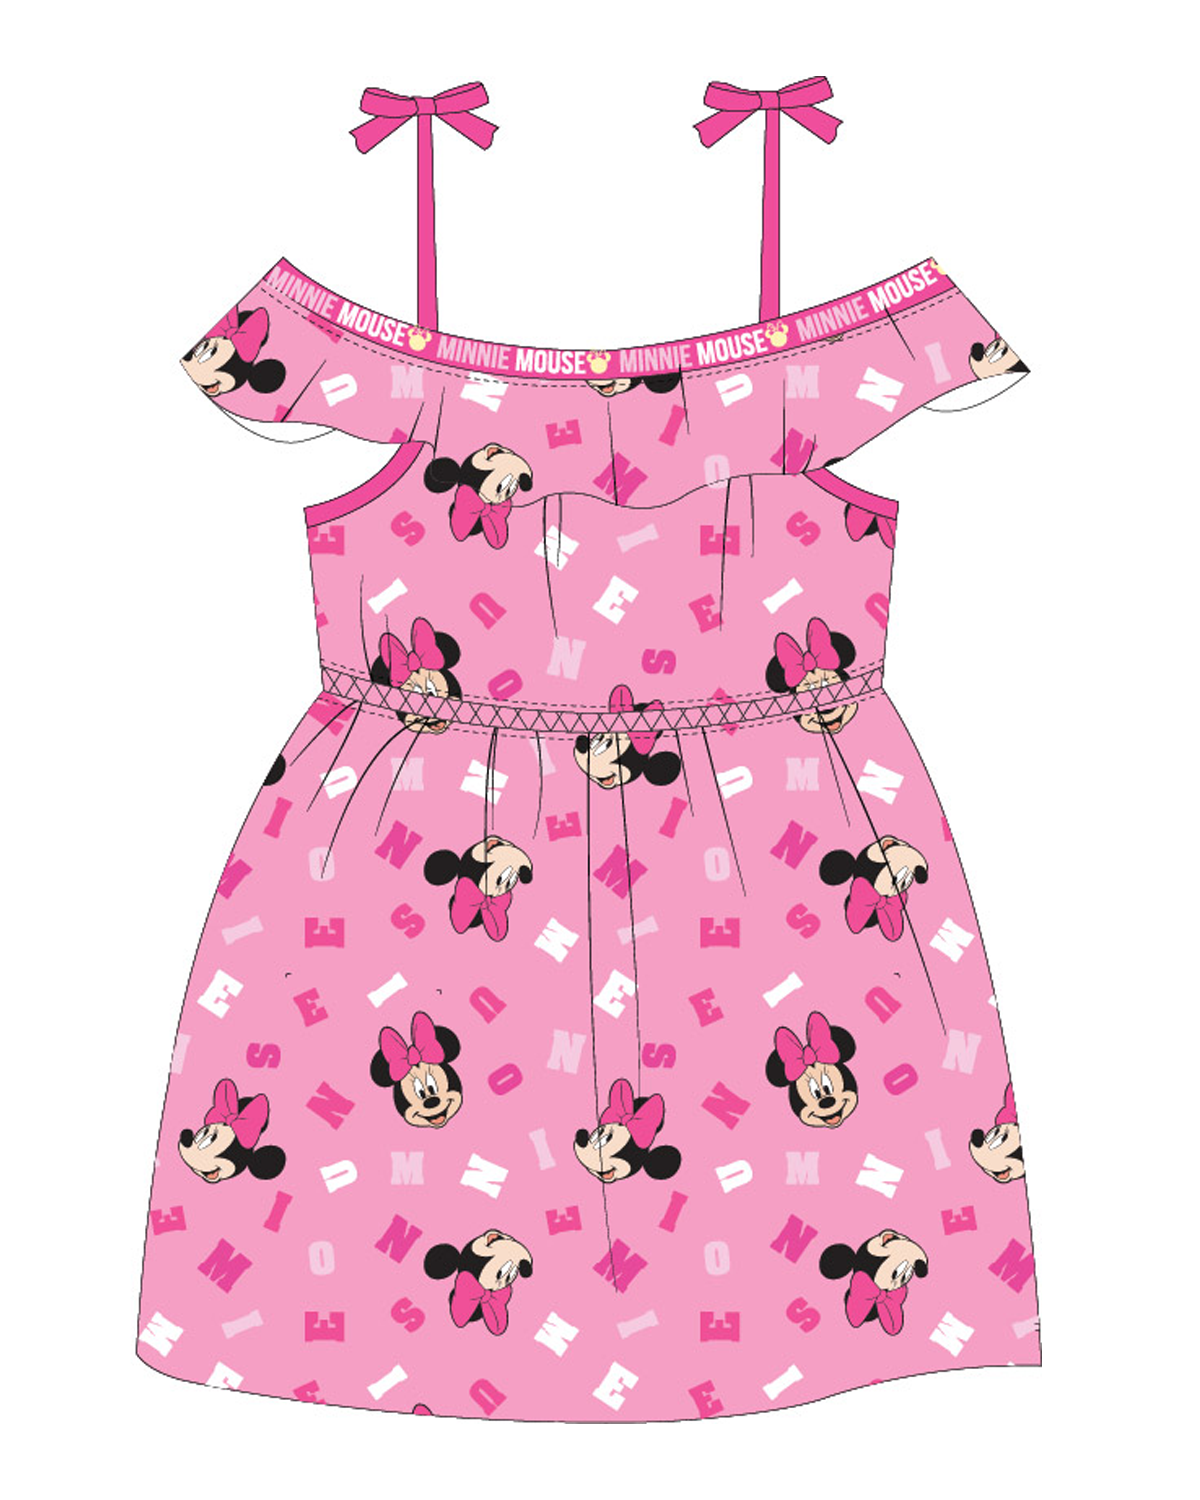 Minnie Mouse - licence Dívčí šaty - Minnie Mouse 52239631, růžová Barva: Růžová, Velikost: 122